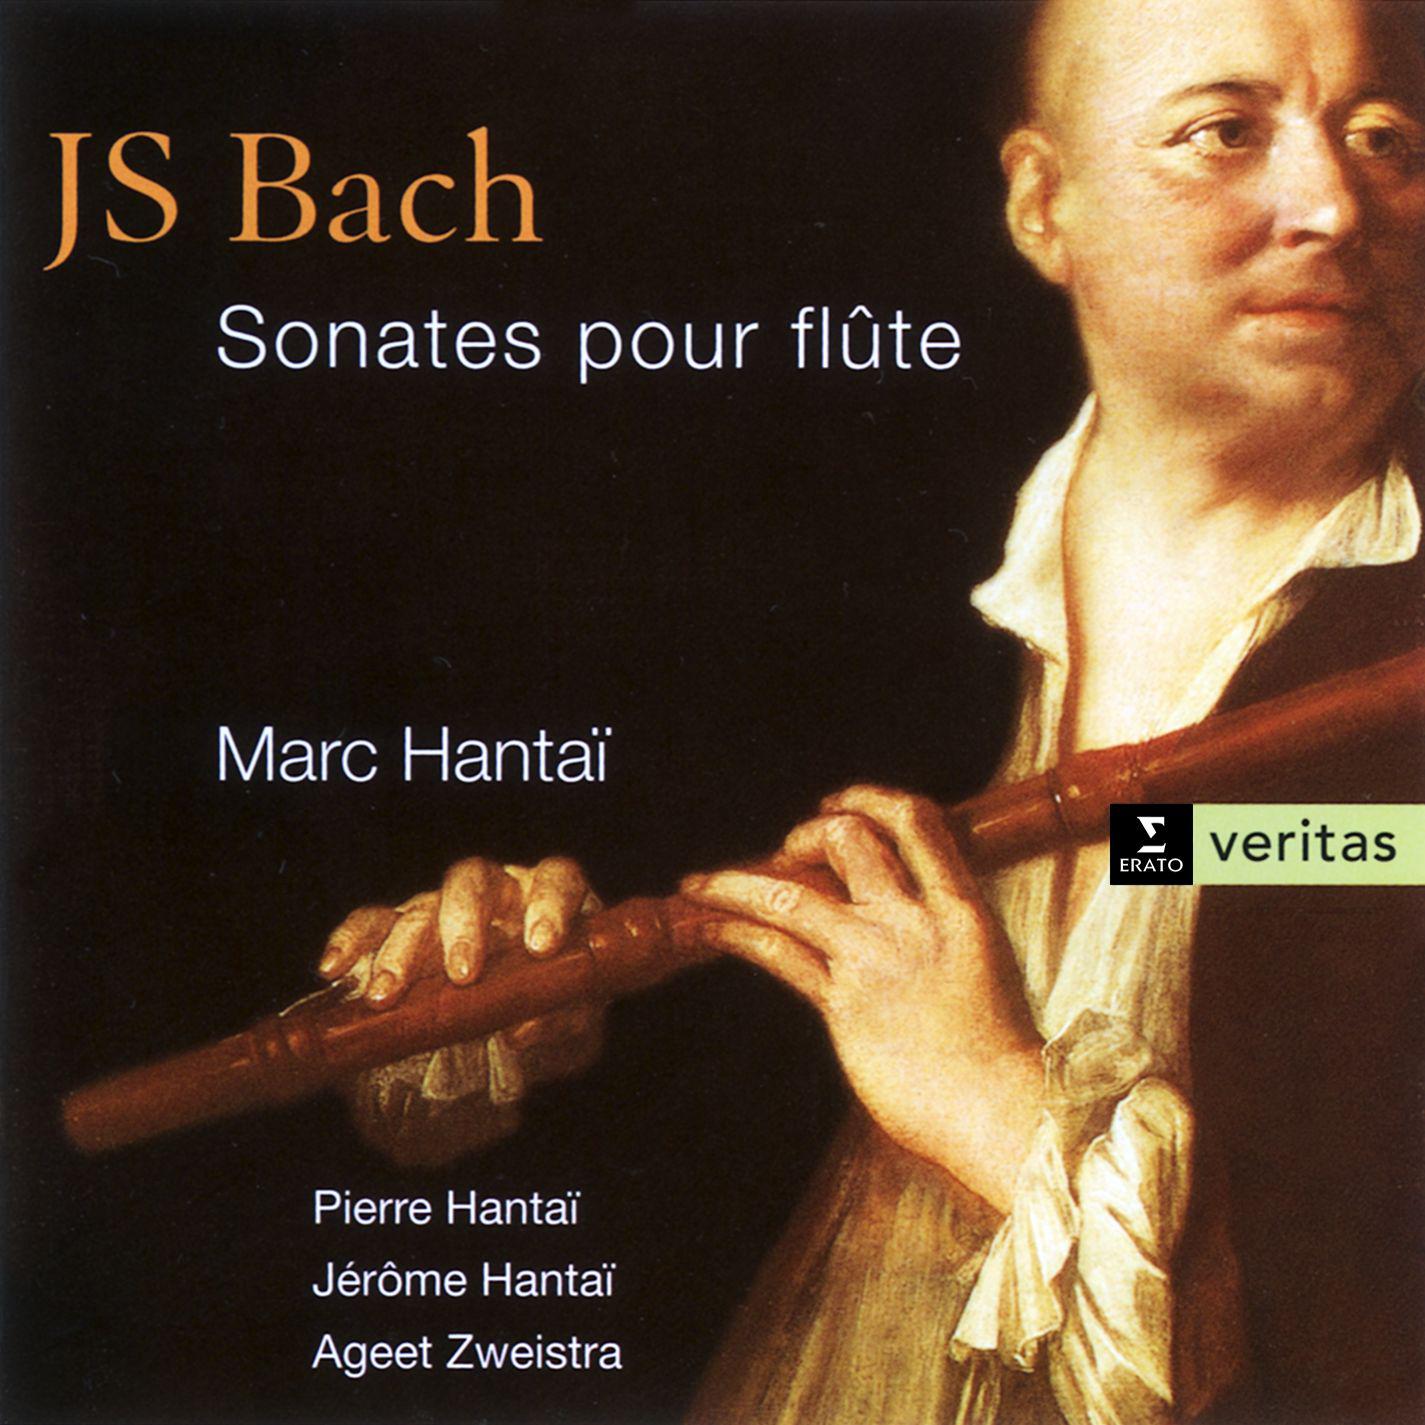 Partita in A minor for solo flute BWV 1013: II. Corrente